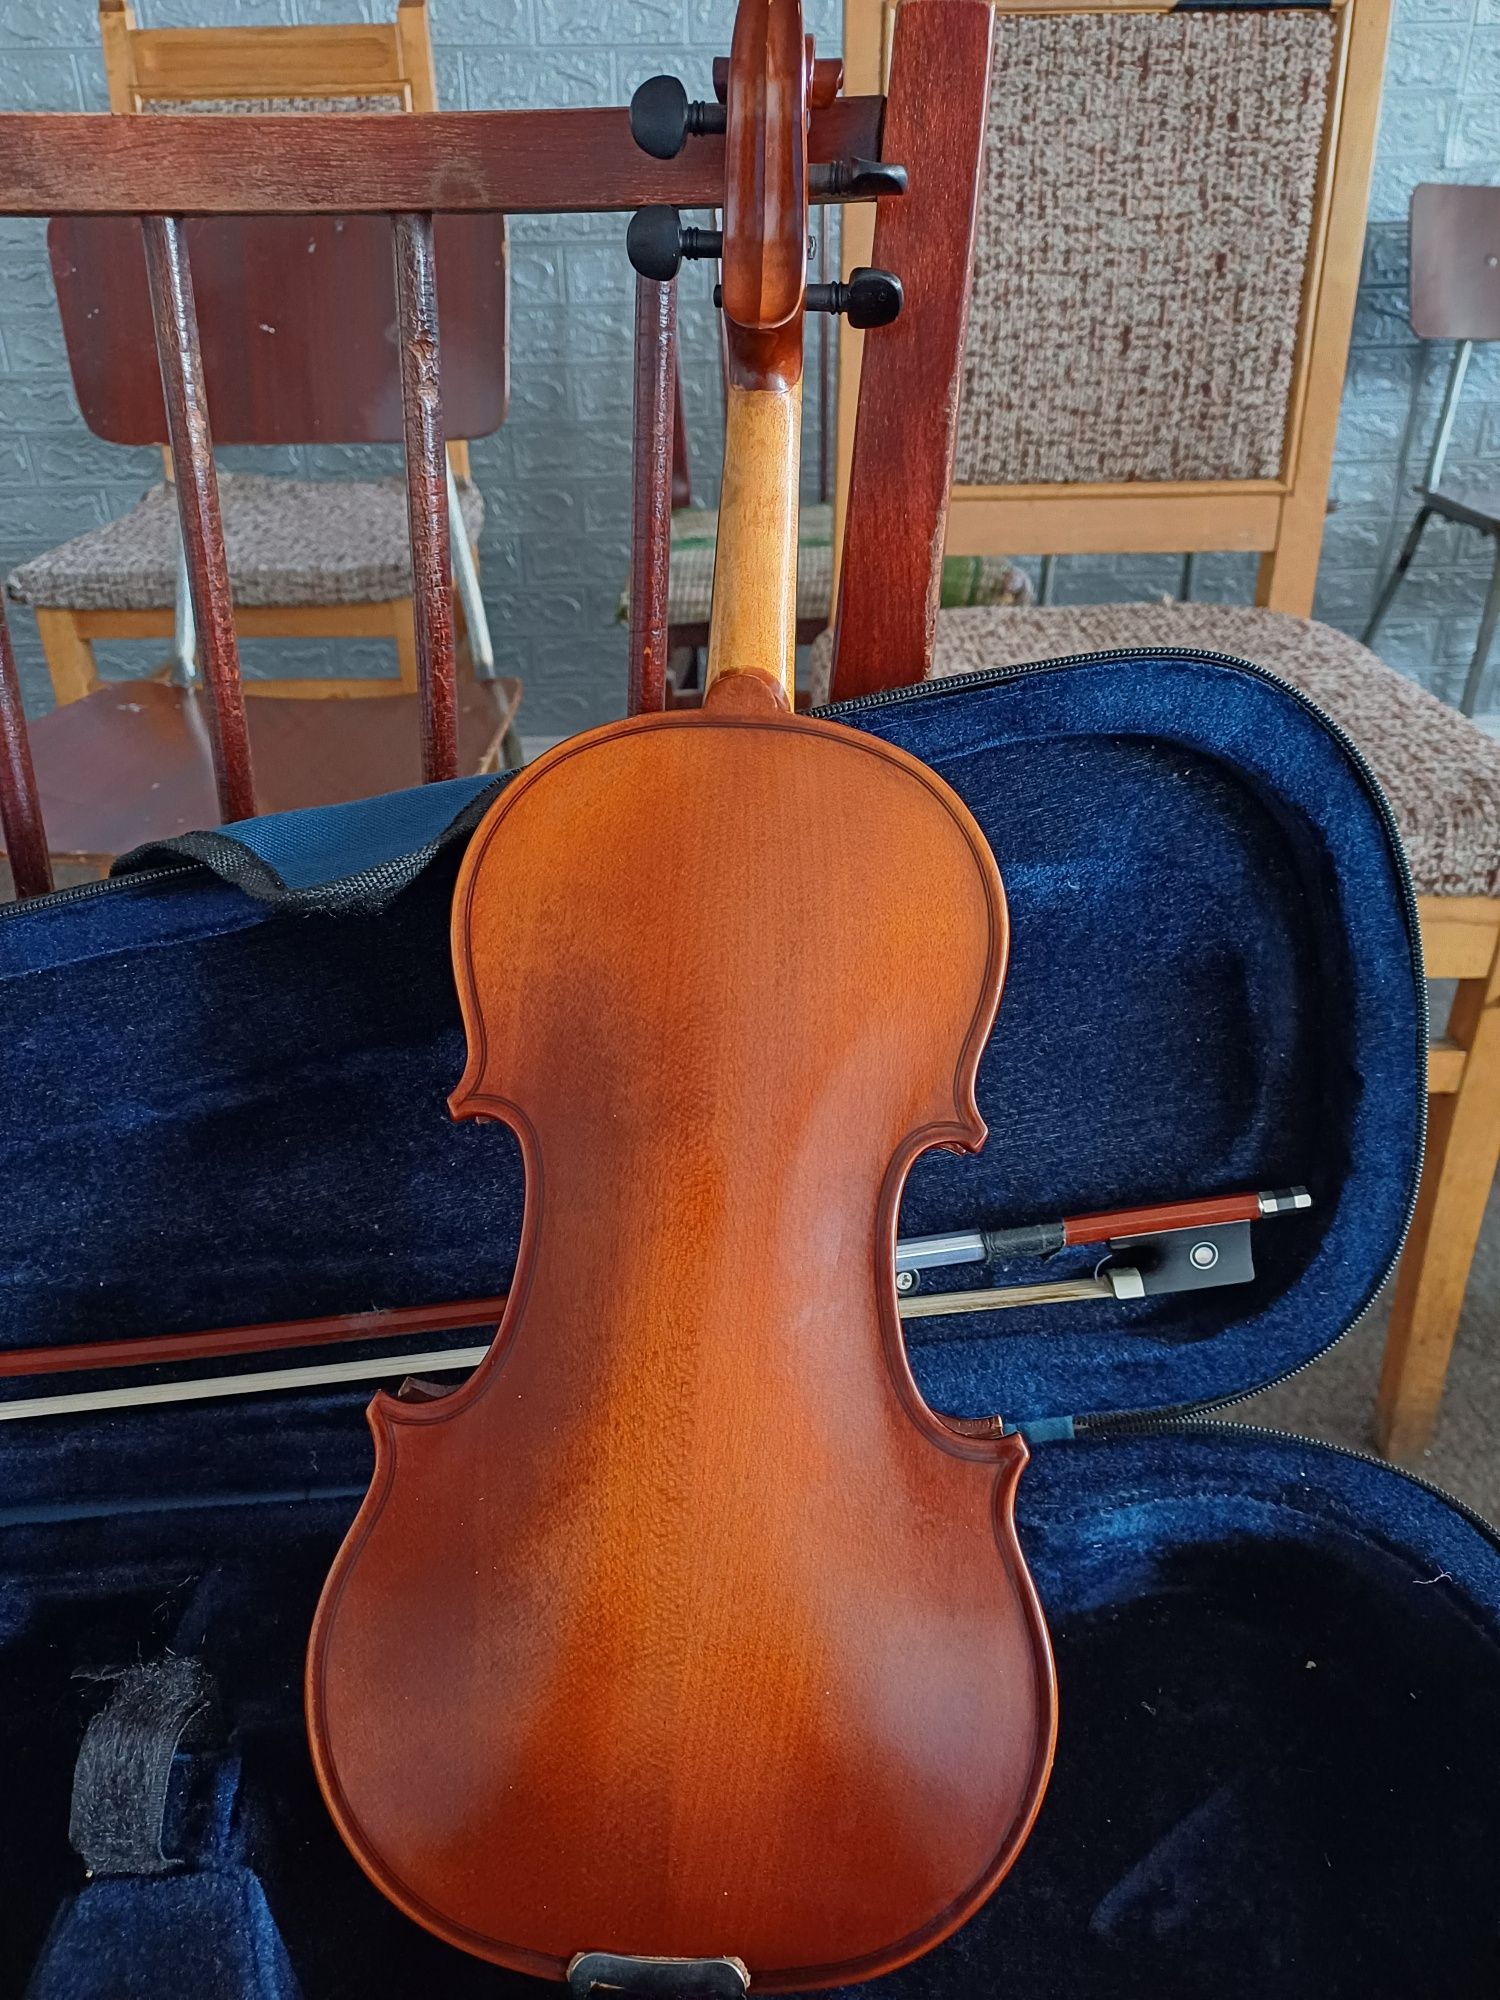 Vând vioara din lemn 1/4 preț 300 ron cu arcus corzi și cutie